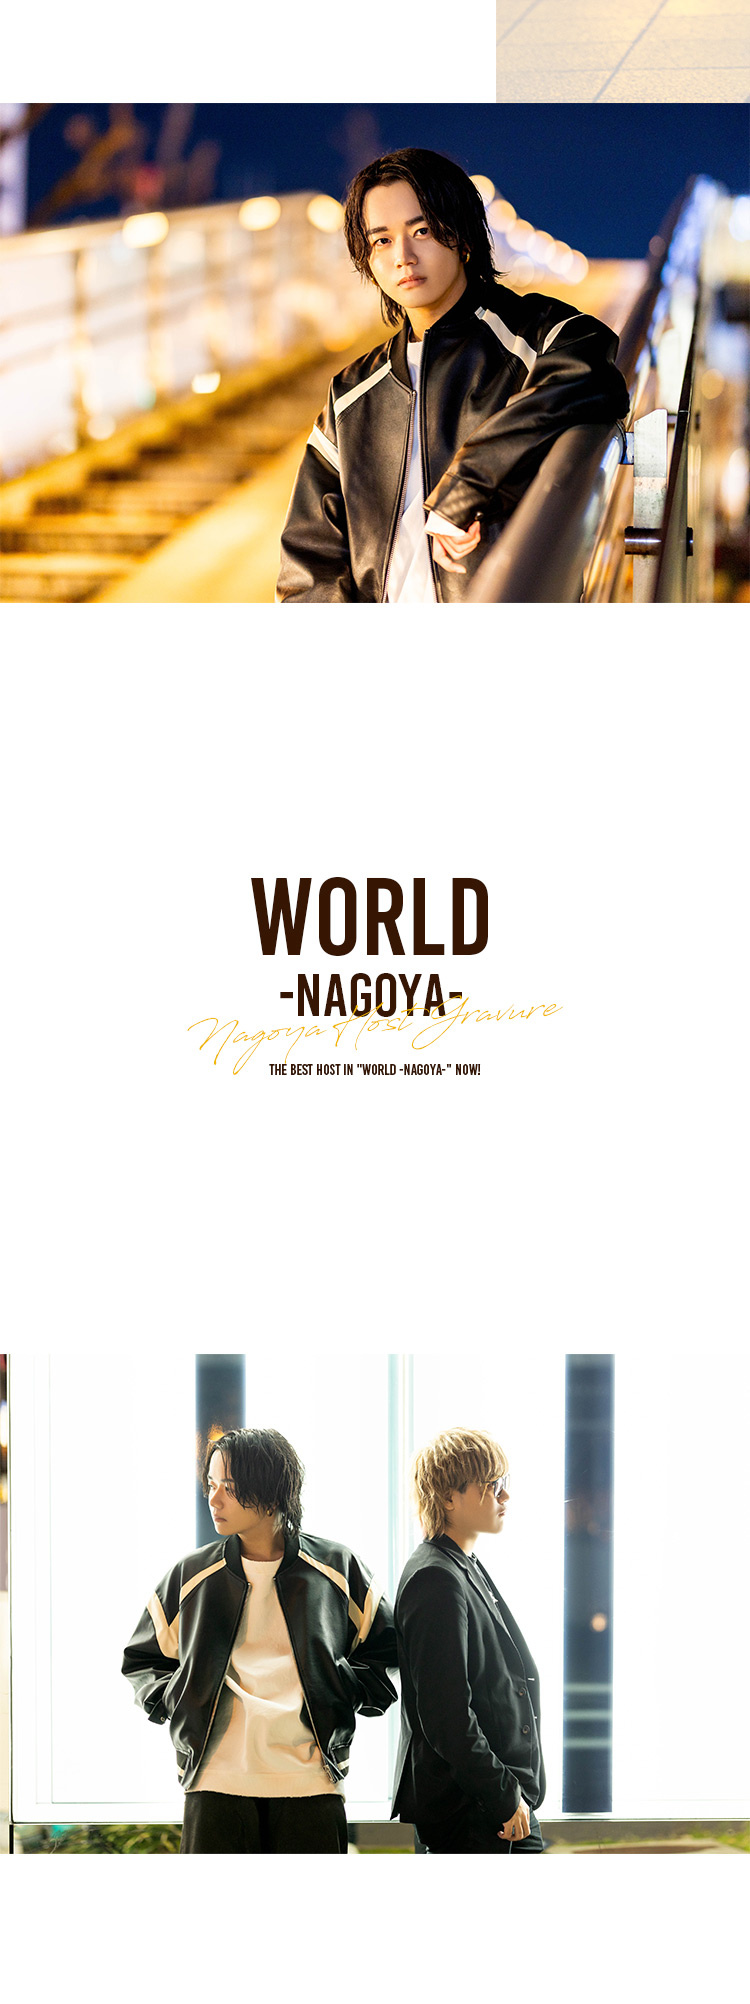 今「WORLD -NAGOYA-」で一押しのホストが登場!!